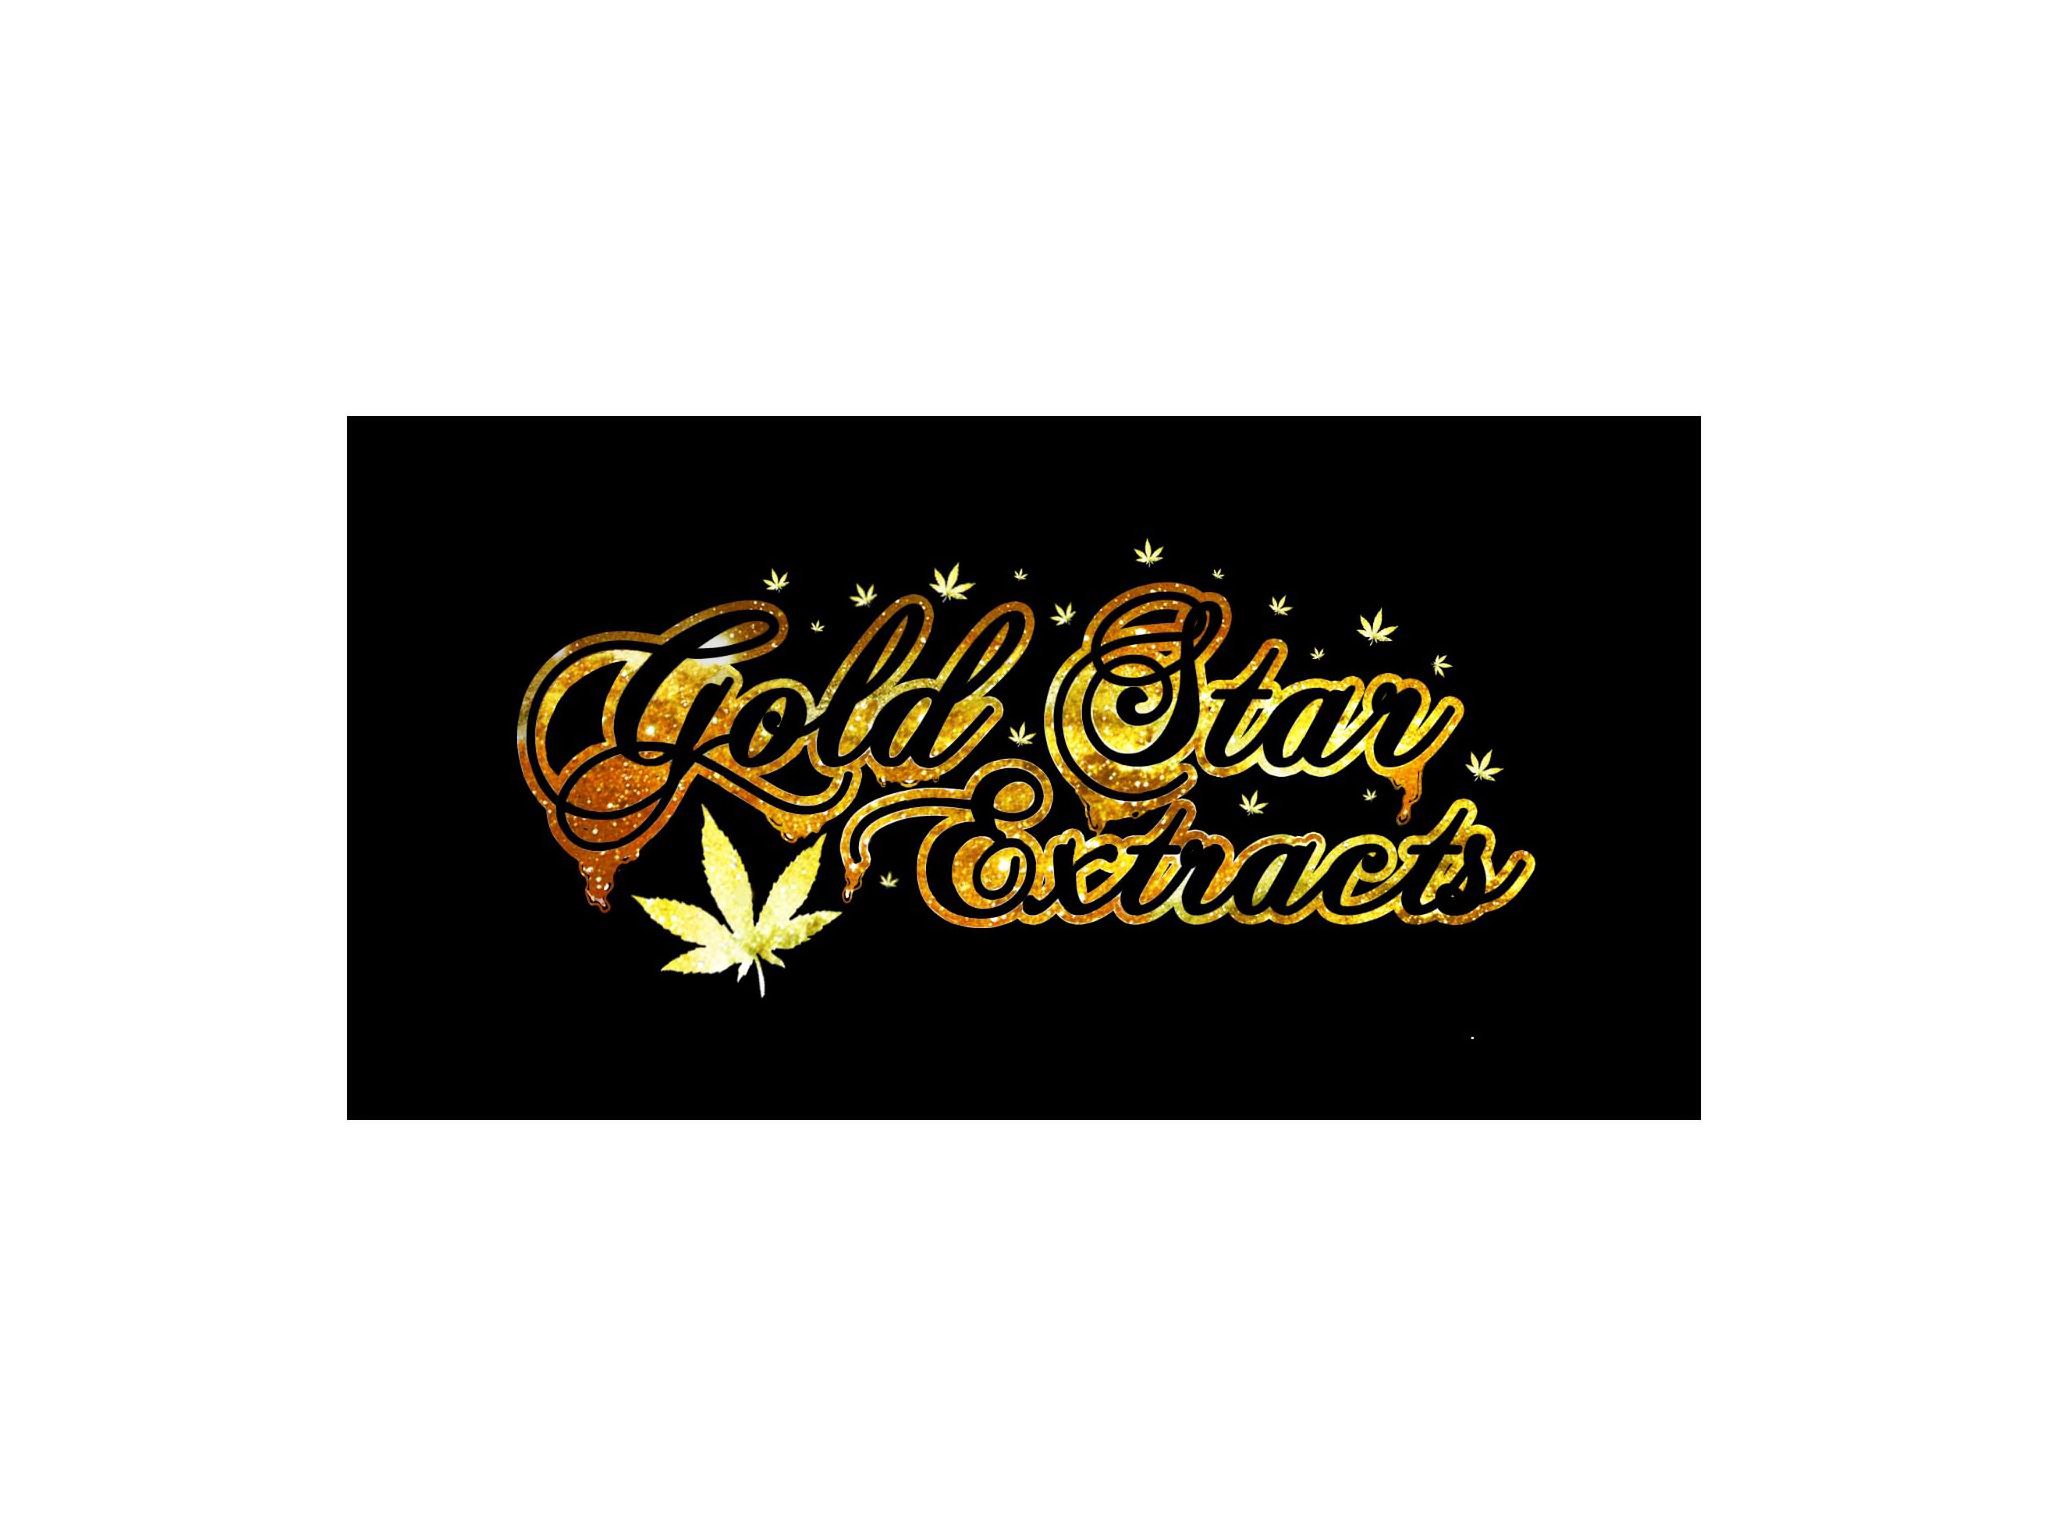 Trademark Logo GOLDSTAR